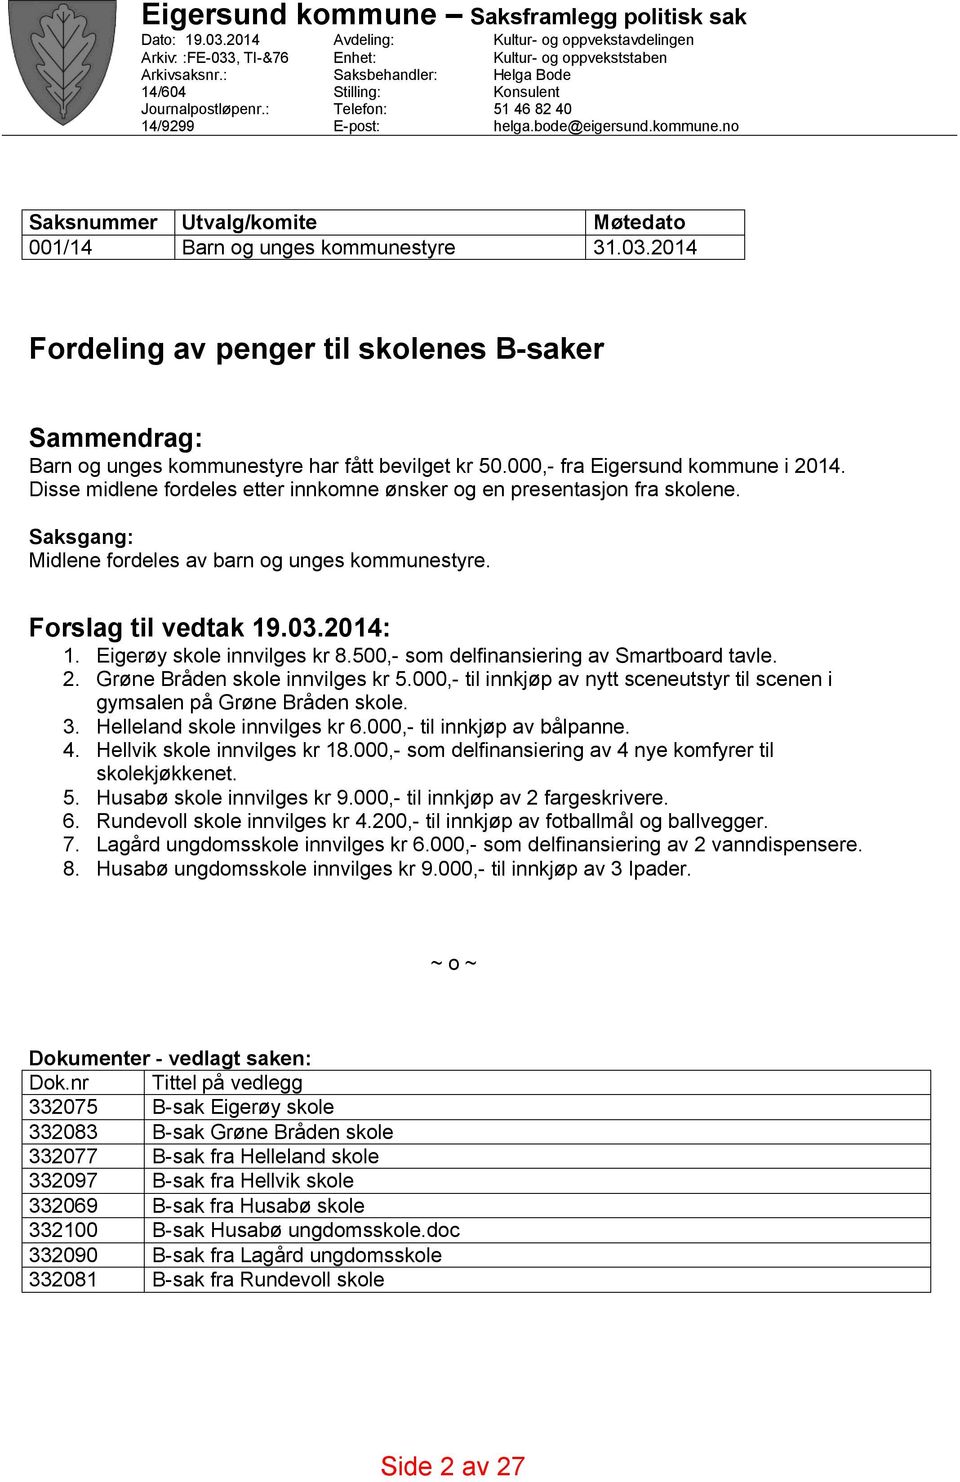 Eigerøy skole innvilges kr 8.500,- som delfinansiering av Smartboard tavle. 2. Grøne Bråden skole innvilges kr 5.000,- til innkjøp av nytt sceneutstyr til scenen i gymsalen på Grøne Bråden skole. 3.